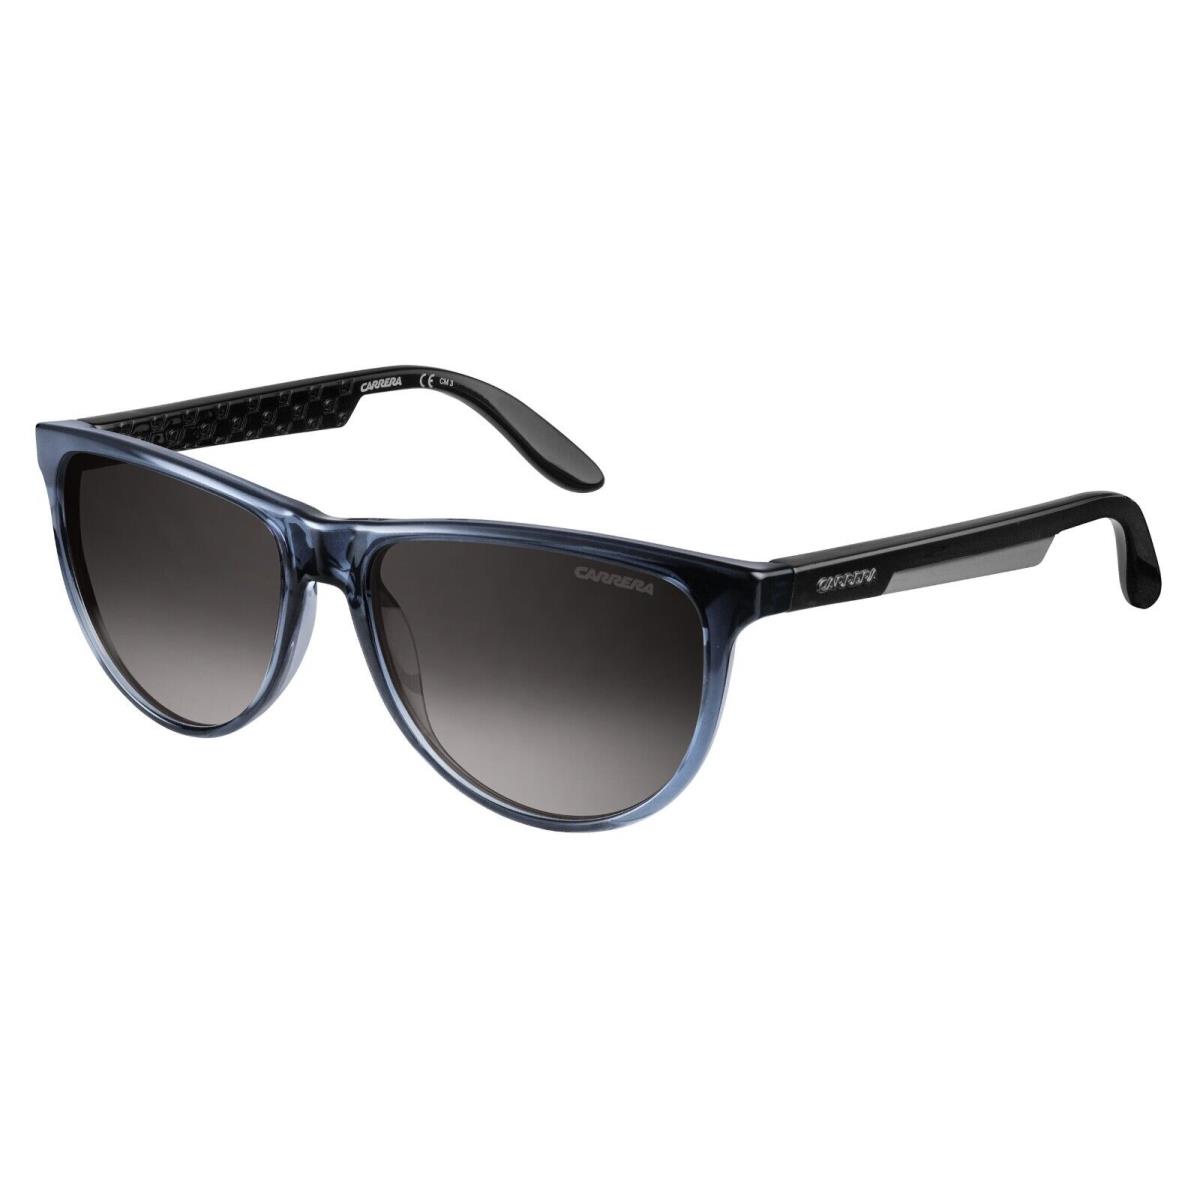 Carrera 5007 0TGN6 Gray/black Square Gray Gradient Non-polarized 56mm Sunglasses